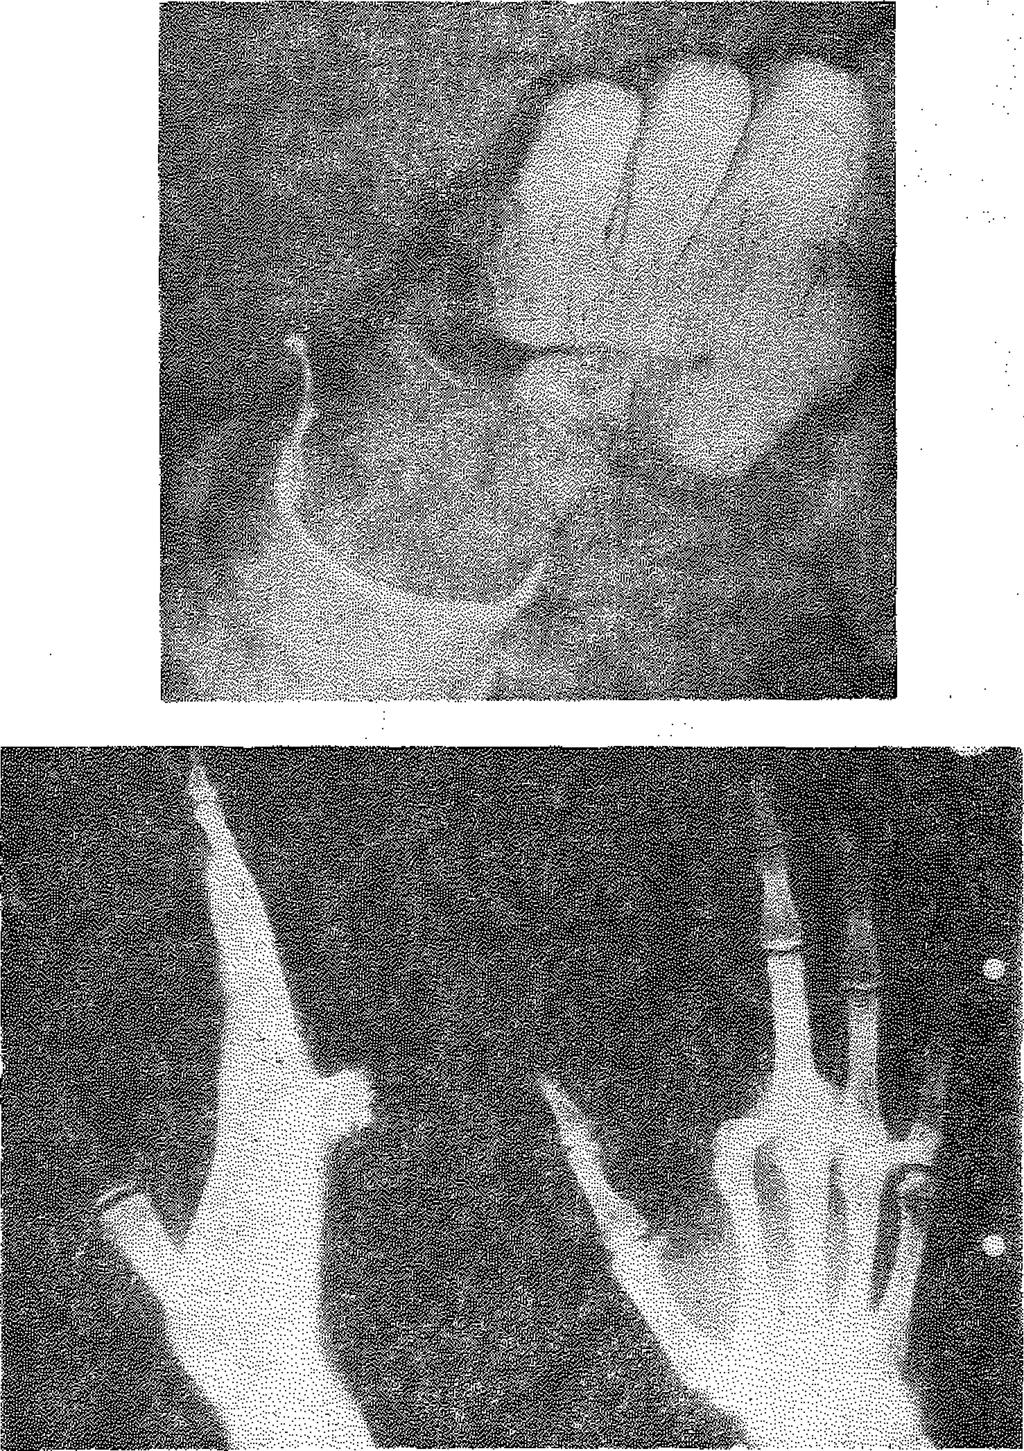 parmaklara amputasyon uygulandı. Daha sonra 3. parmak, 1. metakarp tabanına nöro-vasküler devamlılığı korunarak aktarıldı.